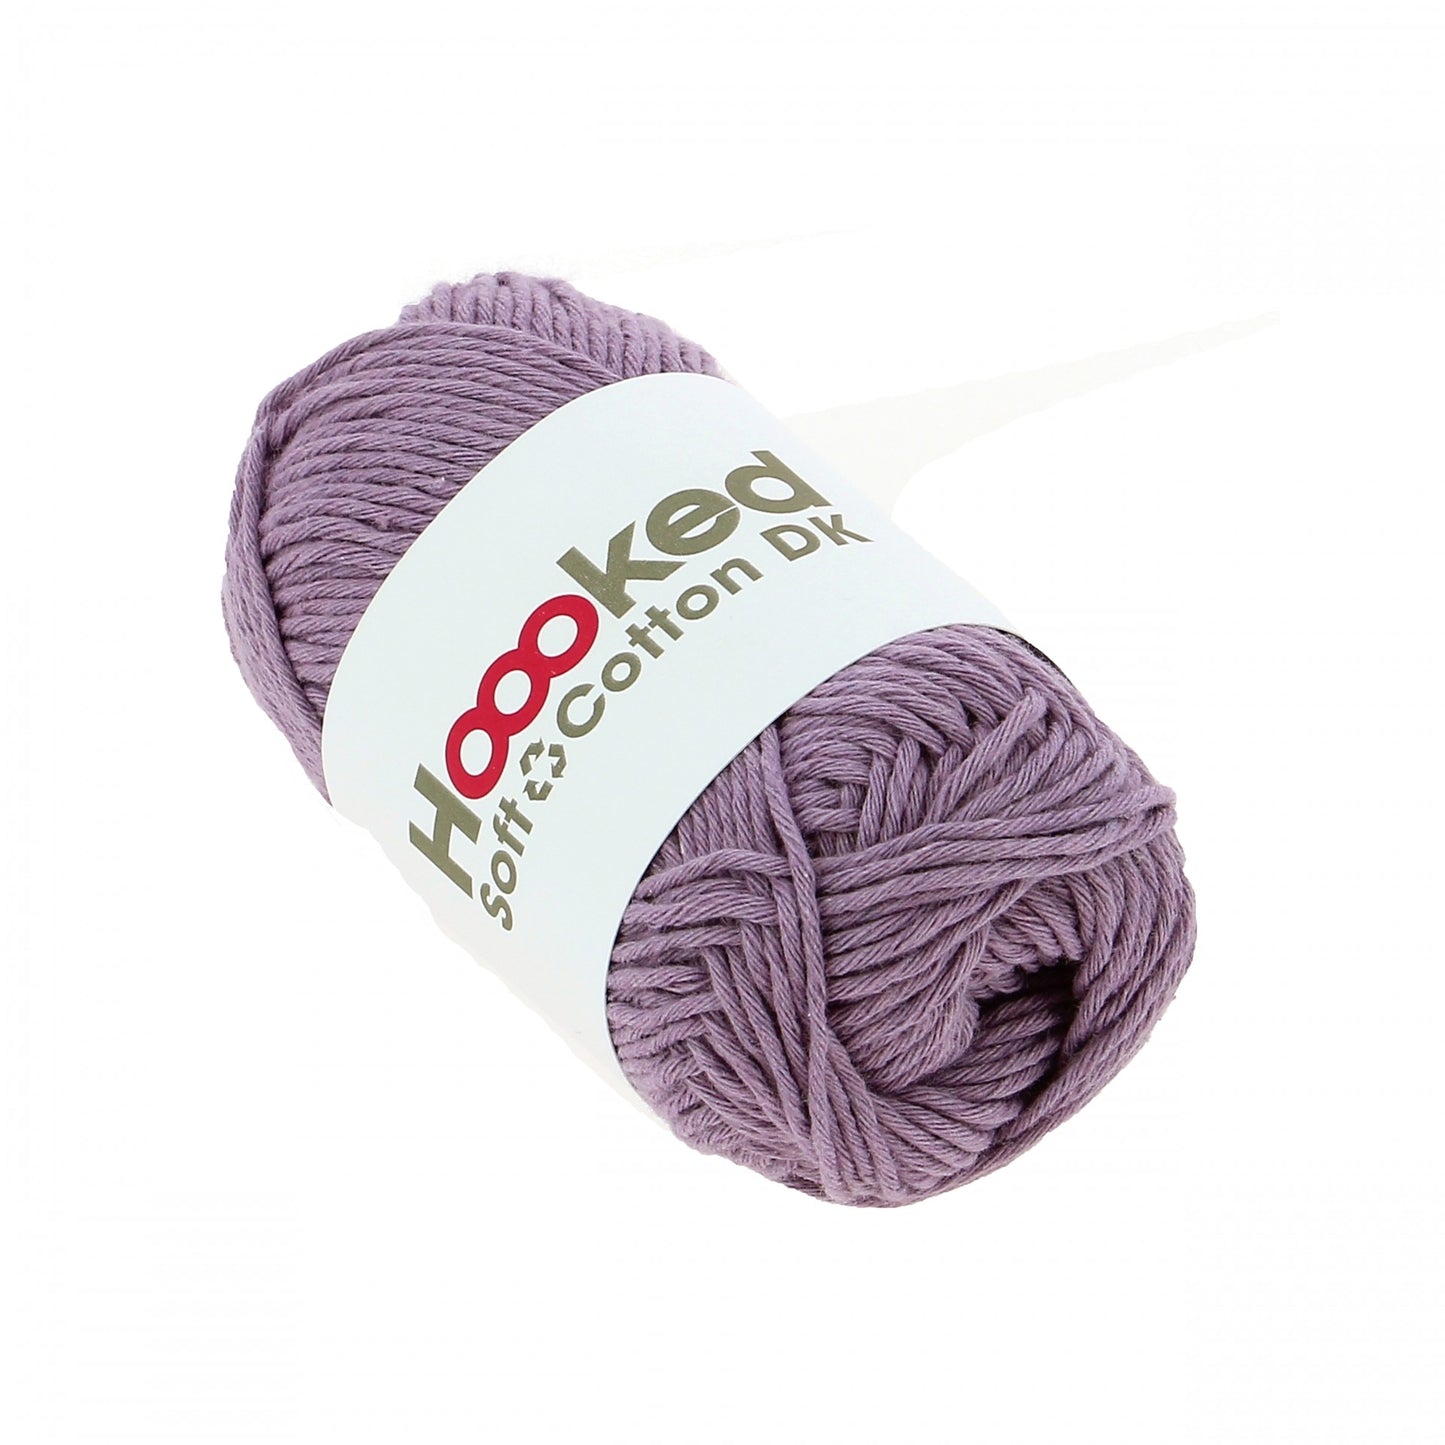 Soft Cotton DK eco New - Lavender